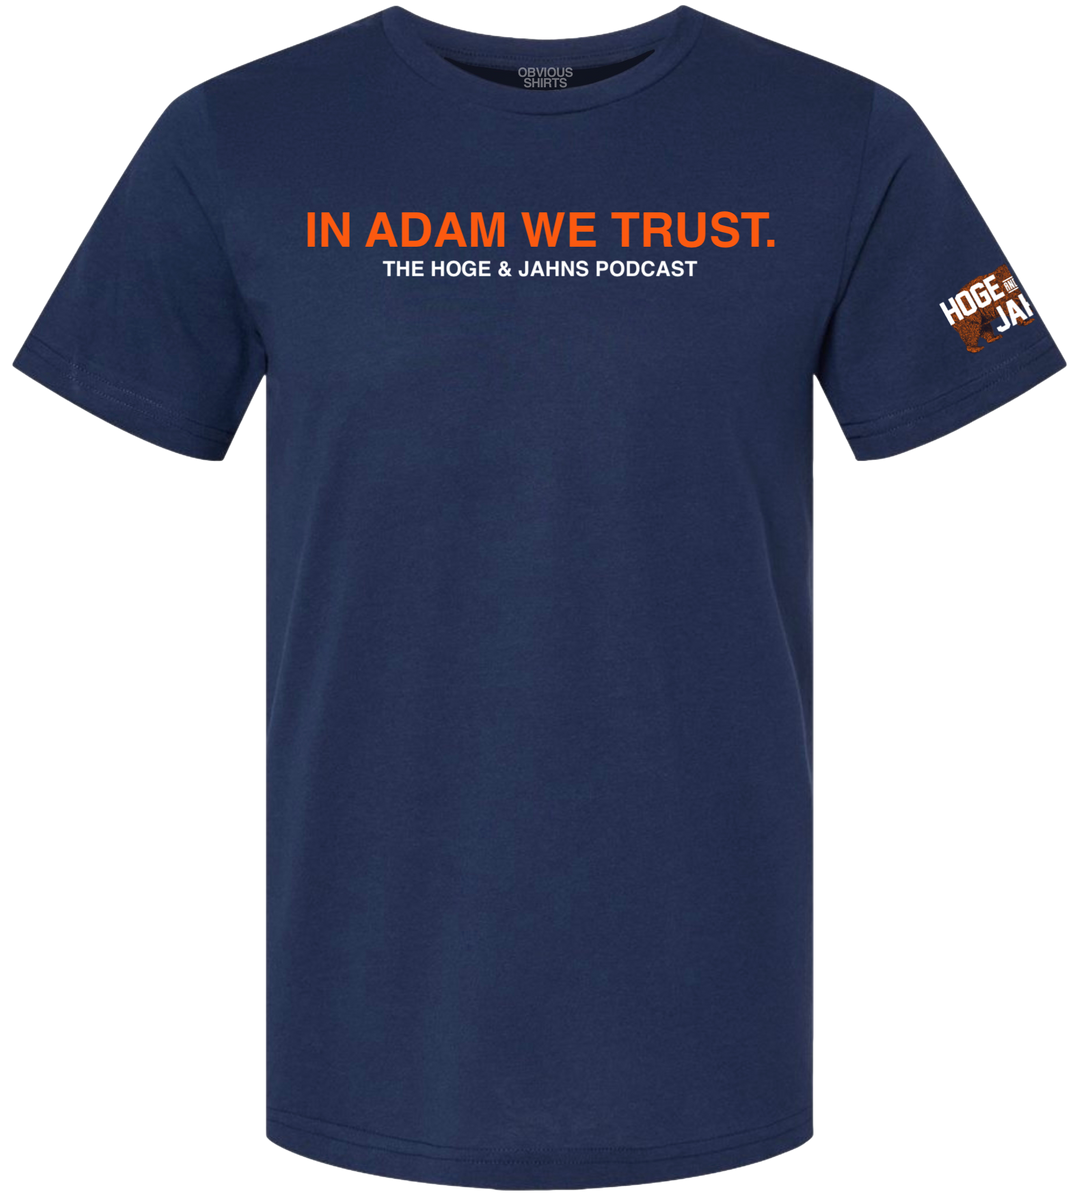 IN ADAM WE TRUST.